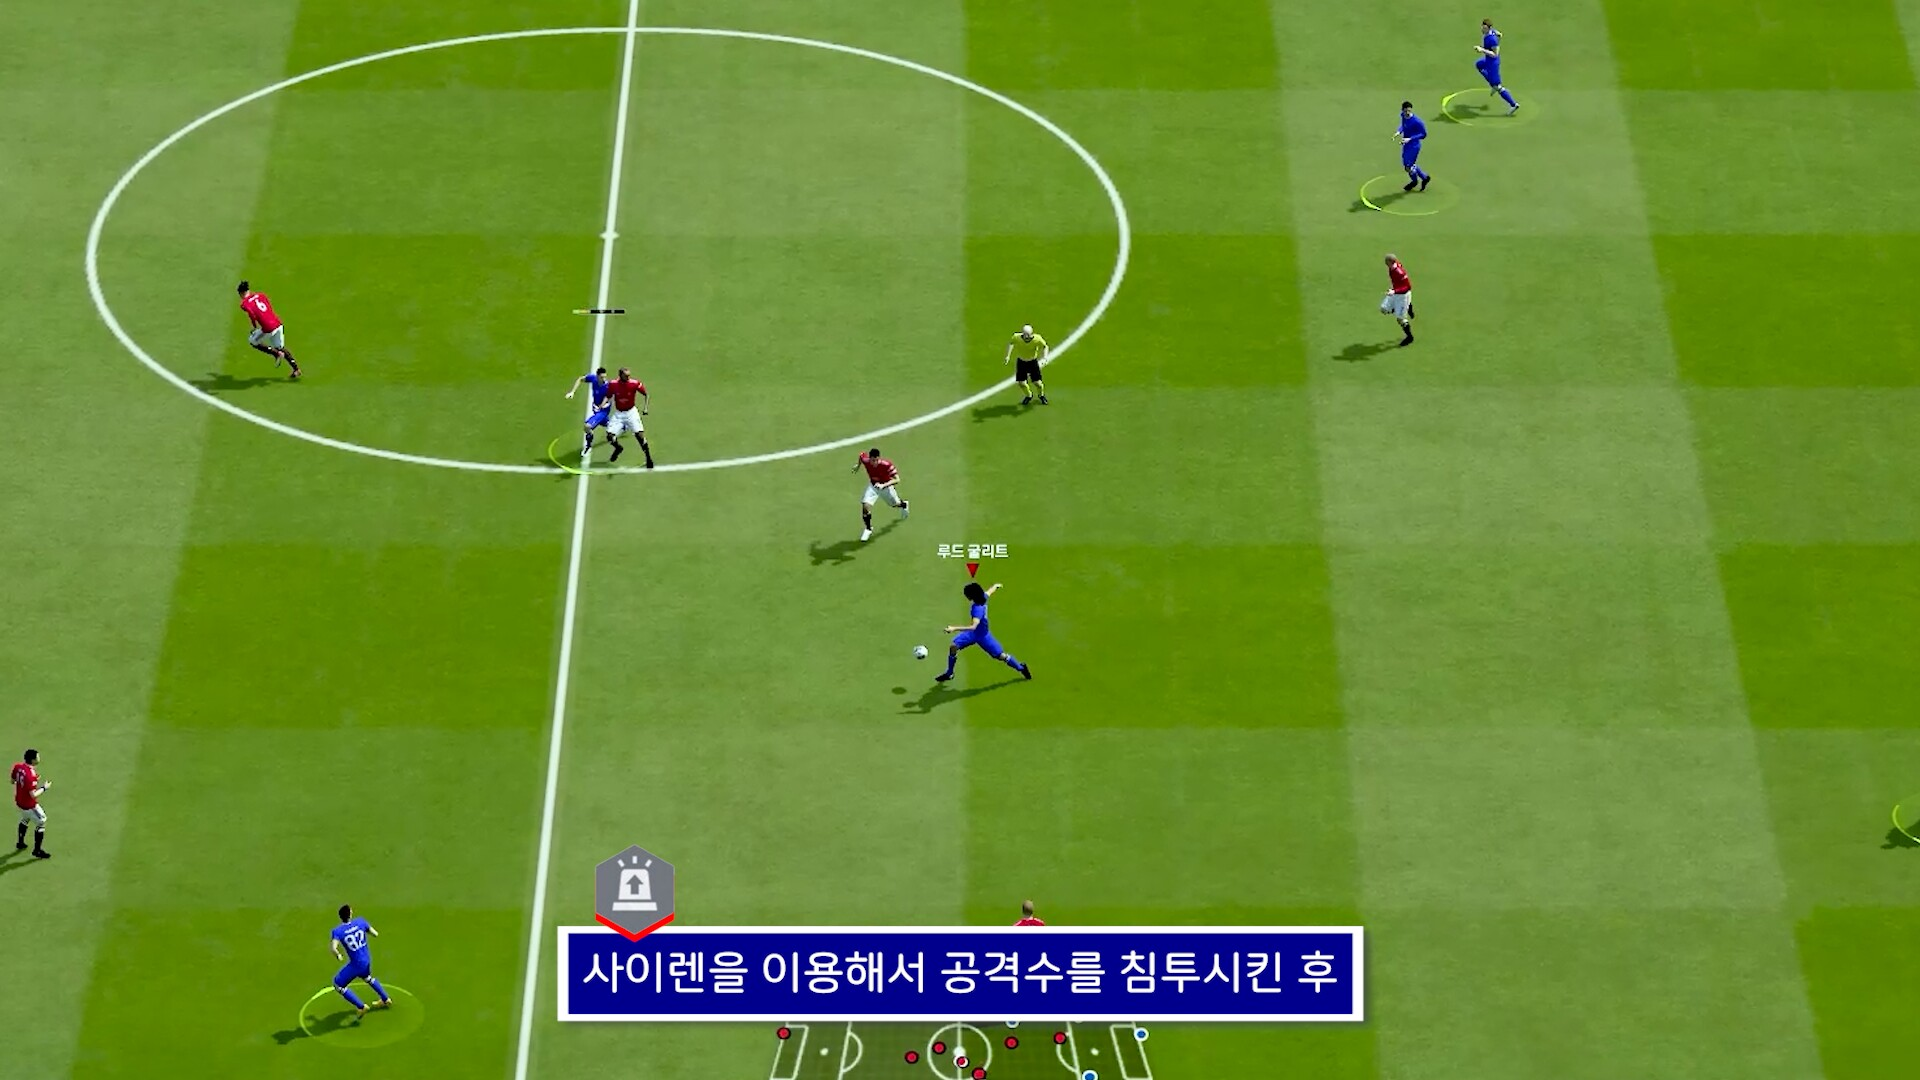 FIFA ONLINE 4 | Hé lộ sơ đồ giúp các cầu thủ phát huy hết khả năng ẩn của " Thánh chuyền bóng "